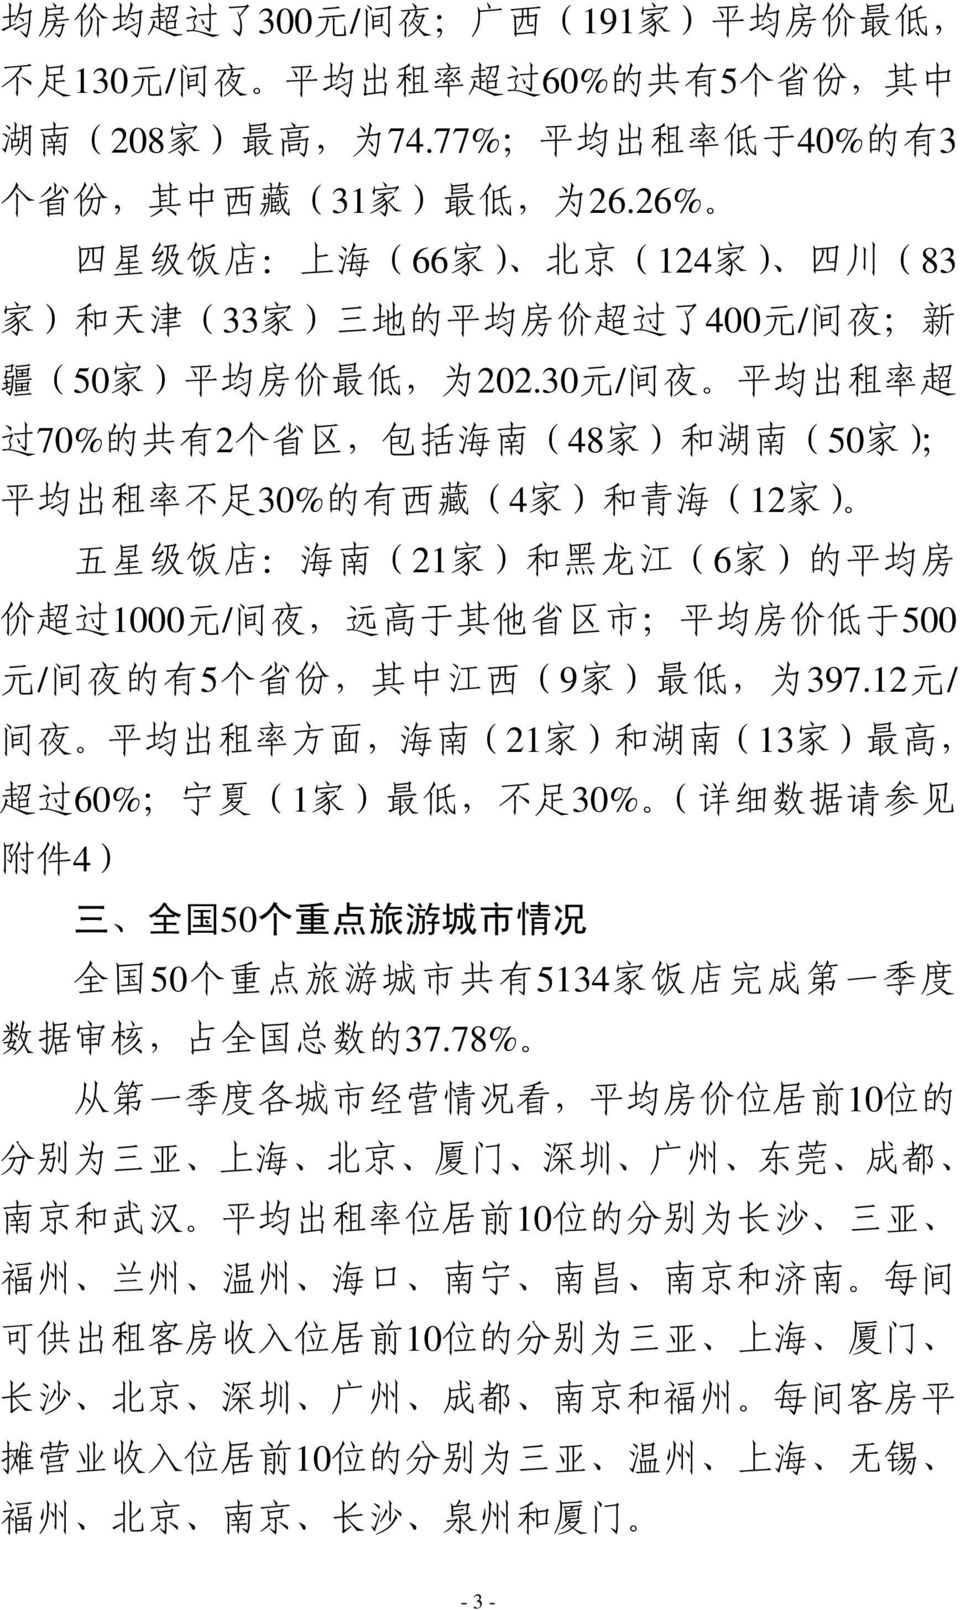 30 元 / 间 夜 平 均 出 租 率 超 过 70% 的 共 有 2 个 省 区, 包 括 海 南 (48 家 ) 和 湖 南 (50 家 ); 平 均 出 租 率 不 足 30% 的 有 西 藏 (4 家 ) 和 青 海 (12 家 ) 五 星 级 饭 店 : 海 南 (21 家 ) 和 黑 龙 江 (6 家 ) 的 平 均 房 价 超 过 1000 元 / 间 夜, 远 高 于 其 他